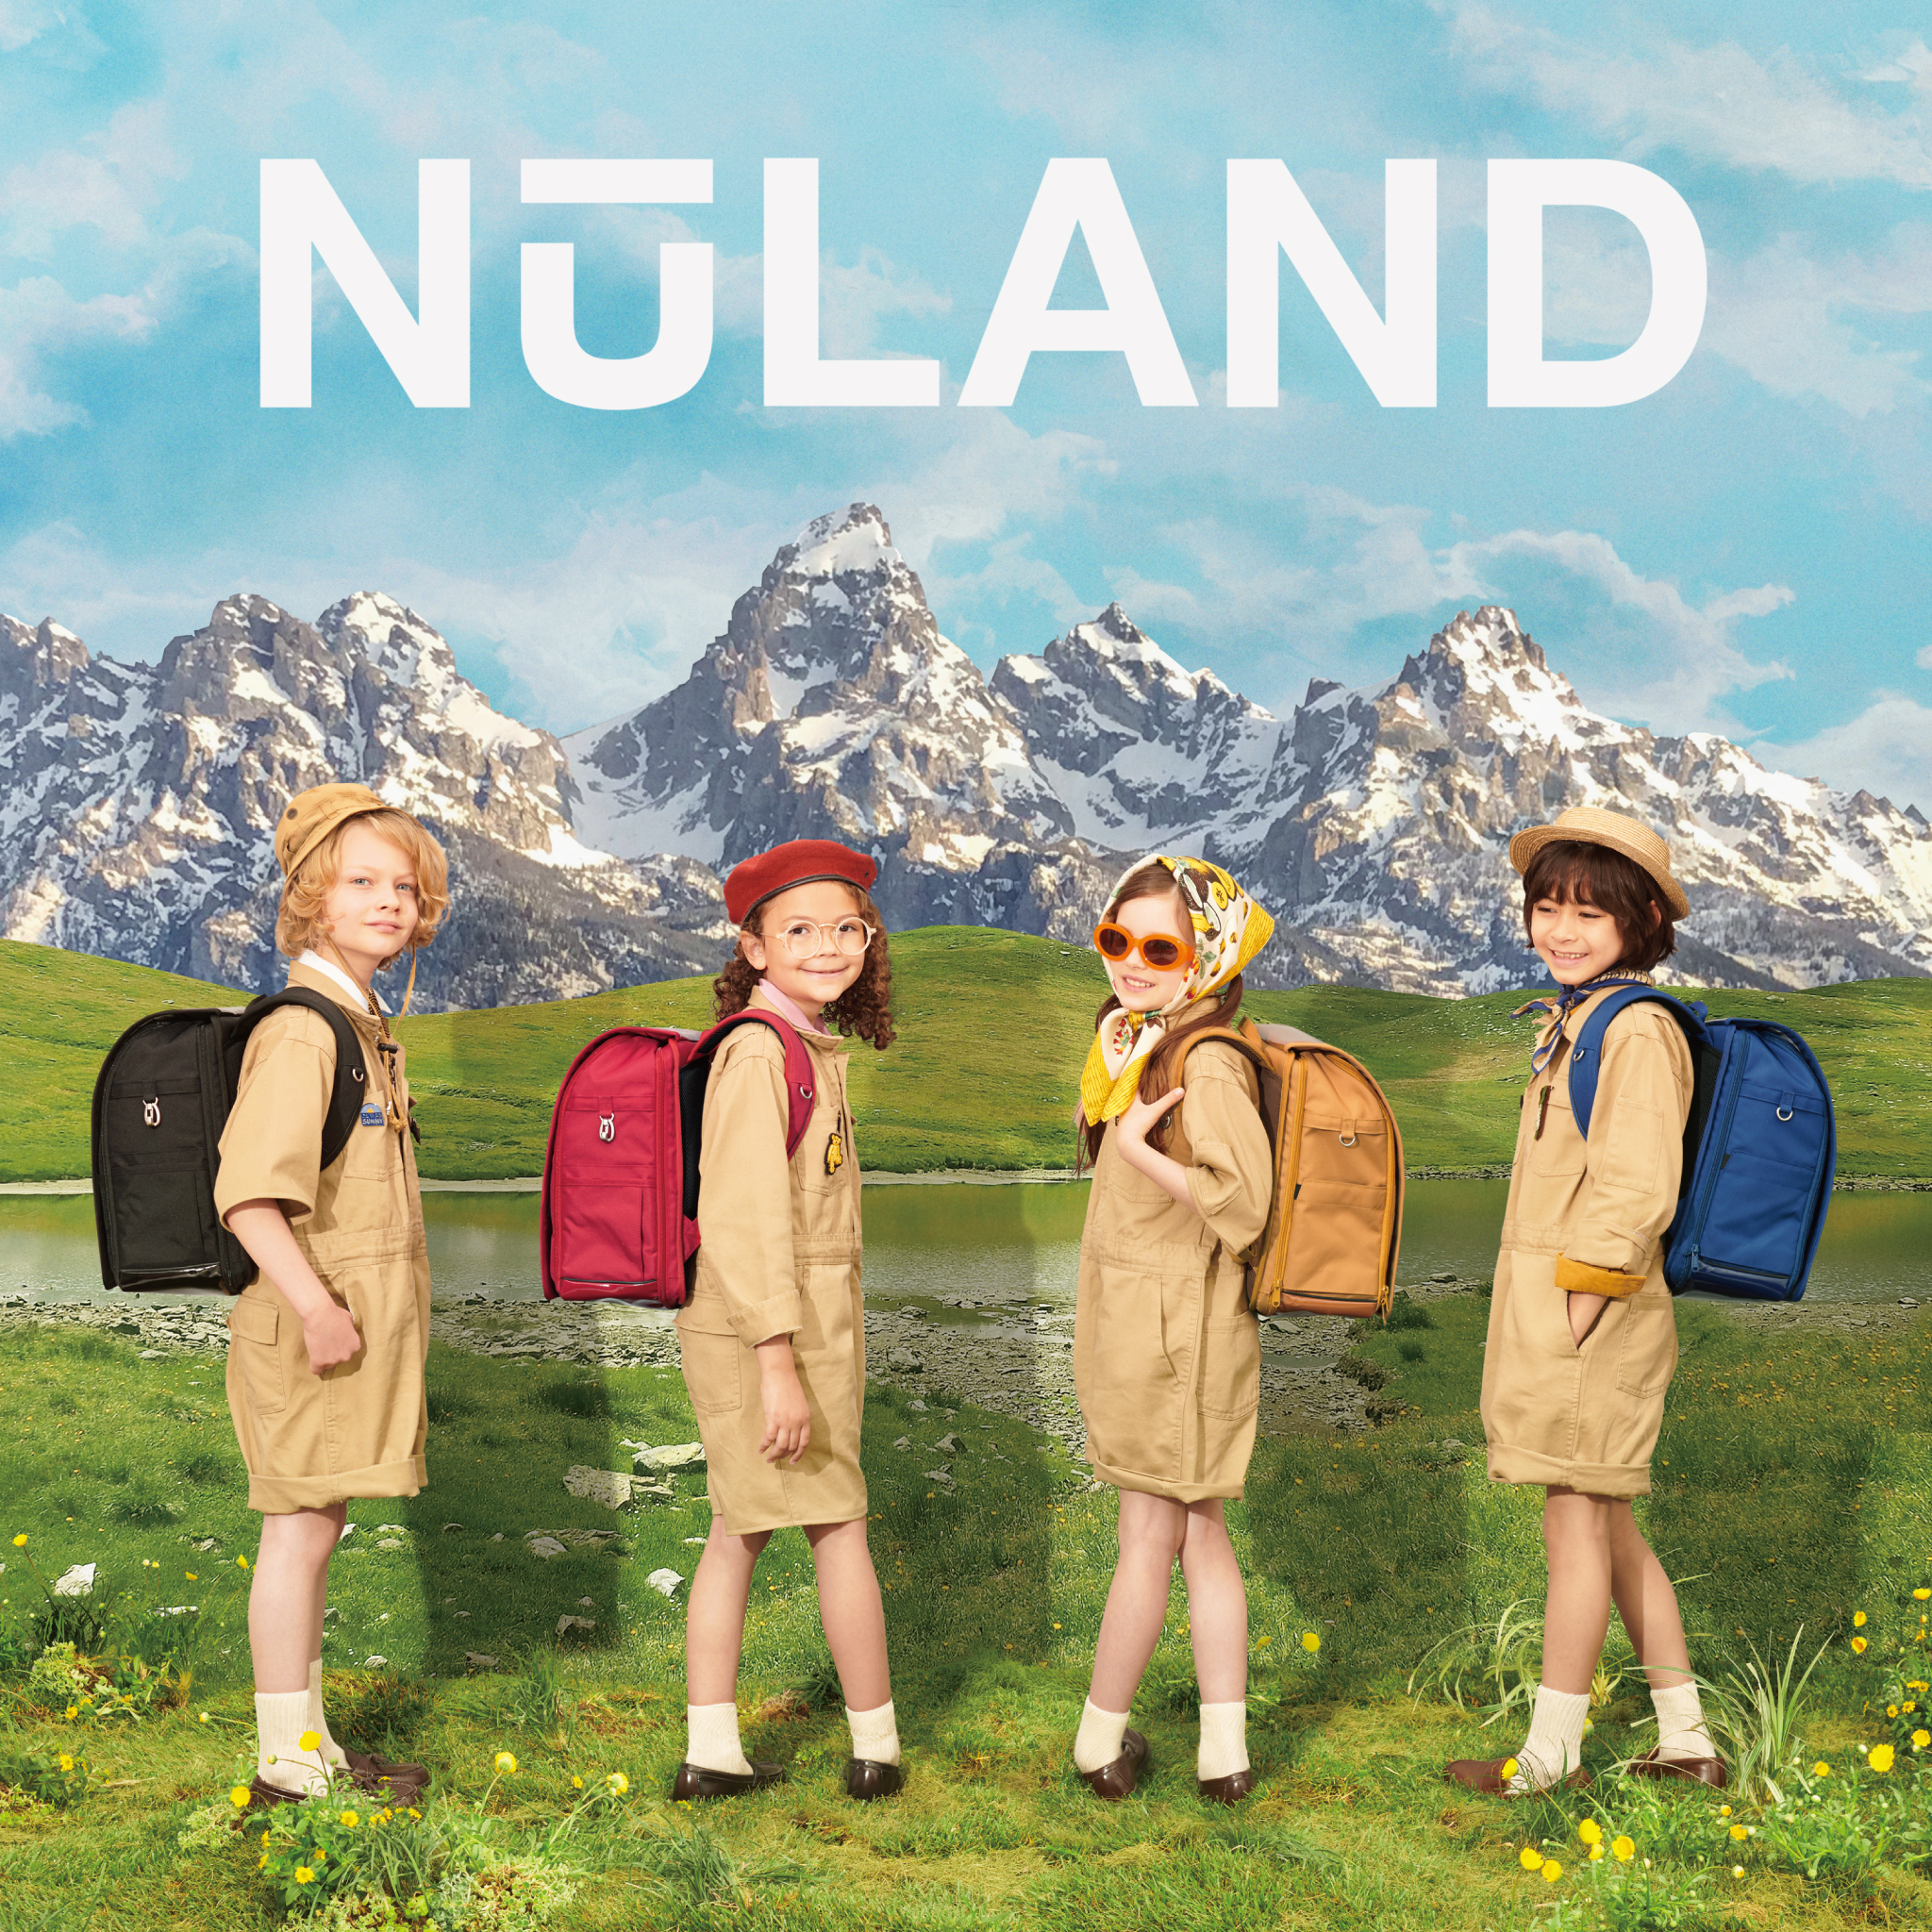 【自由テーマ】環境にも子どもにも優しい新時代のスクールバッグ「NuLAND」